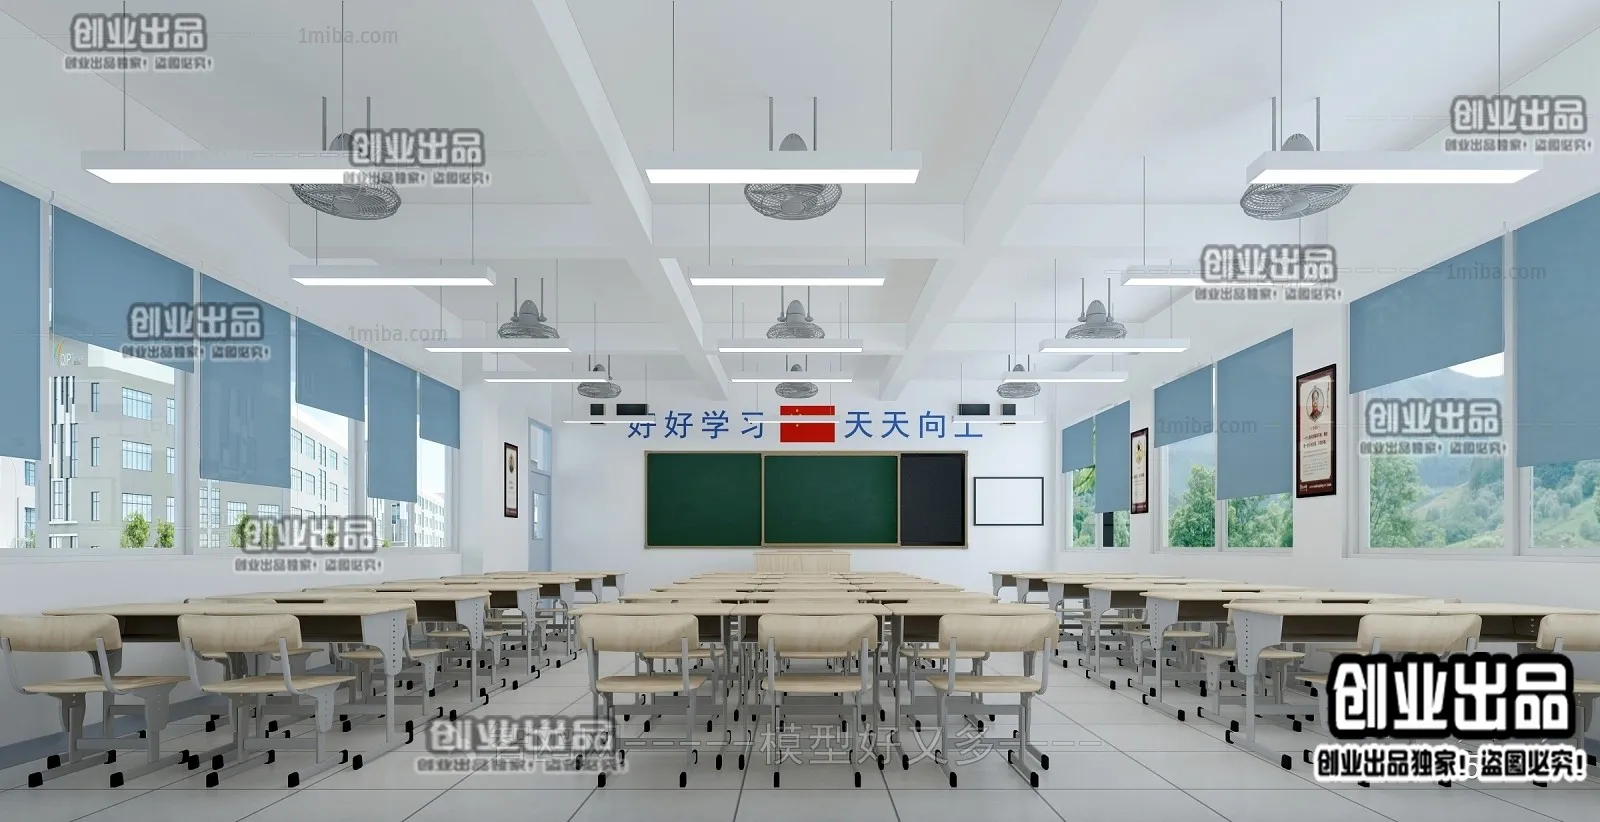 3D SCHOOL INTERIOR (VRAY) – CLASSROOM 3D SCENES – 014